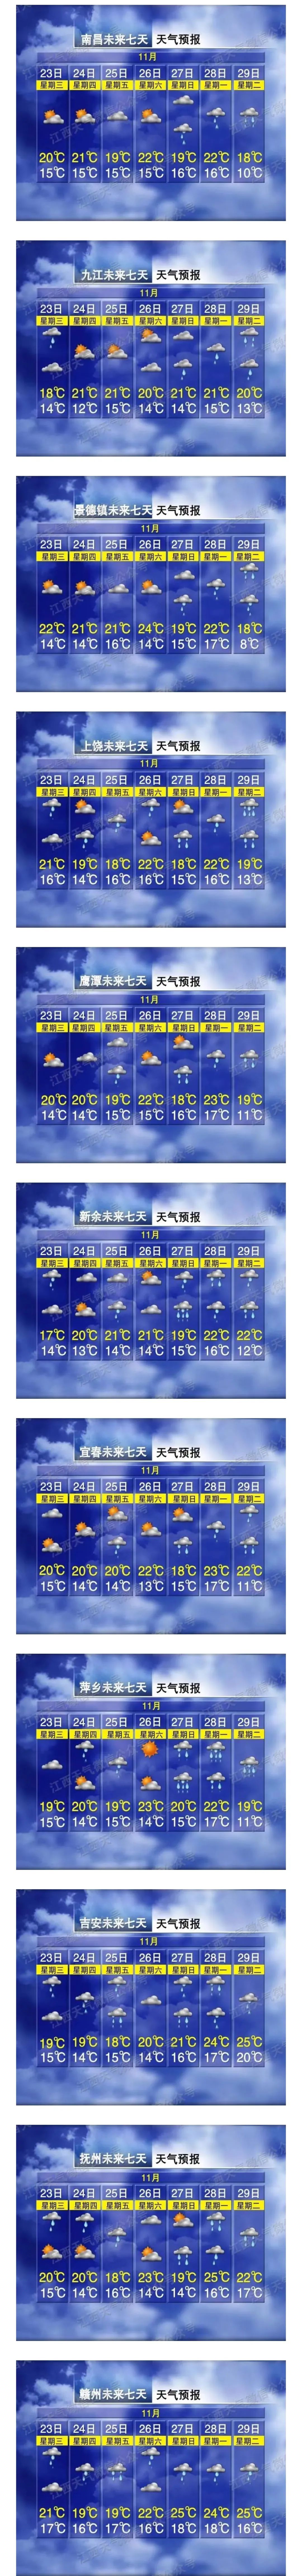 南昌天气预报15天查询图片